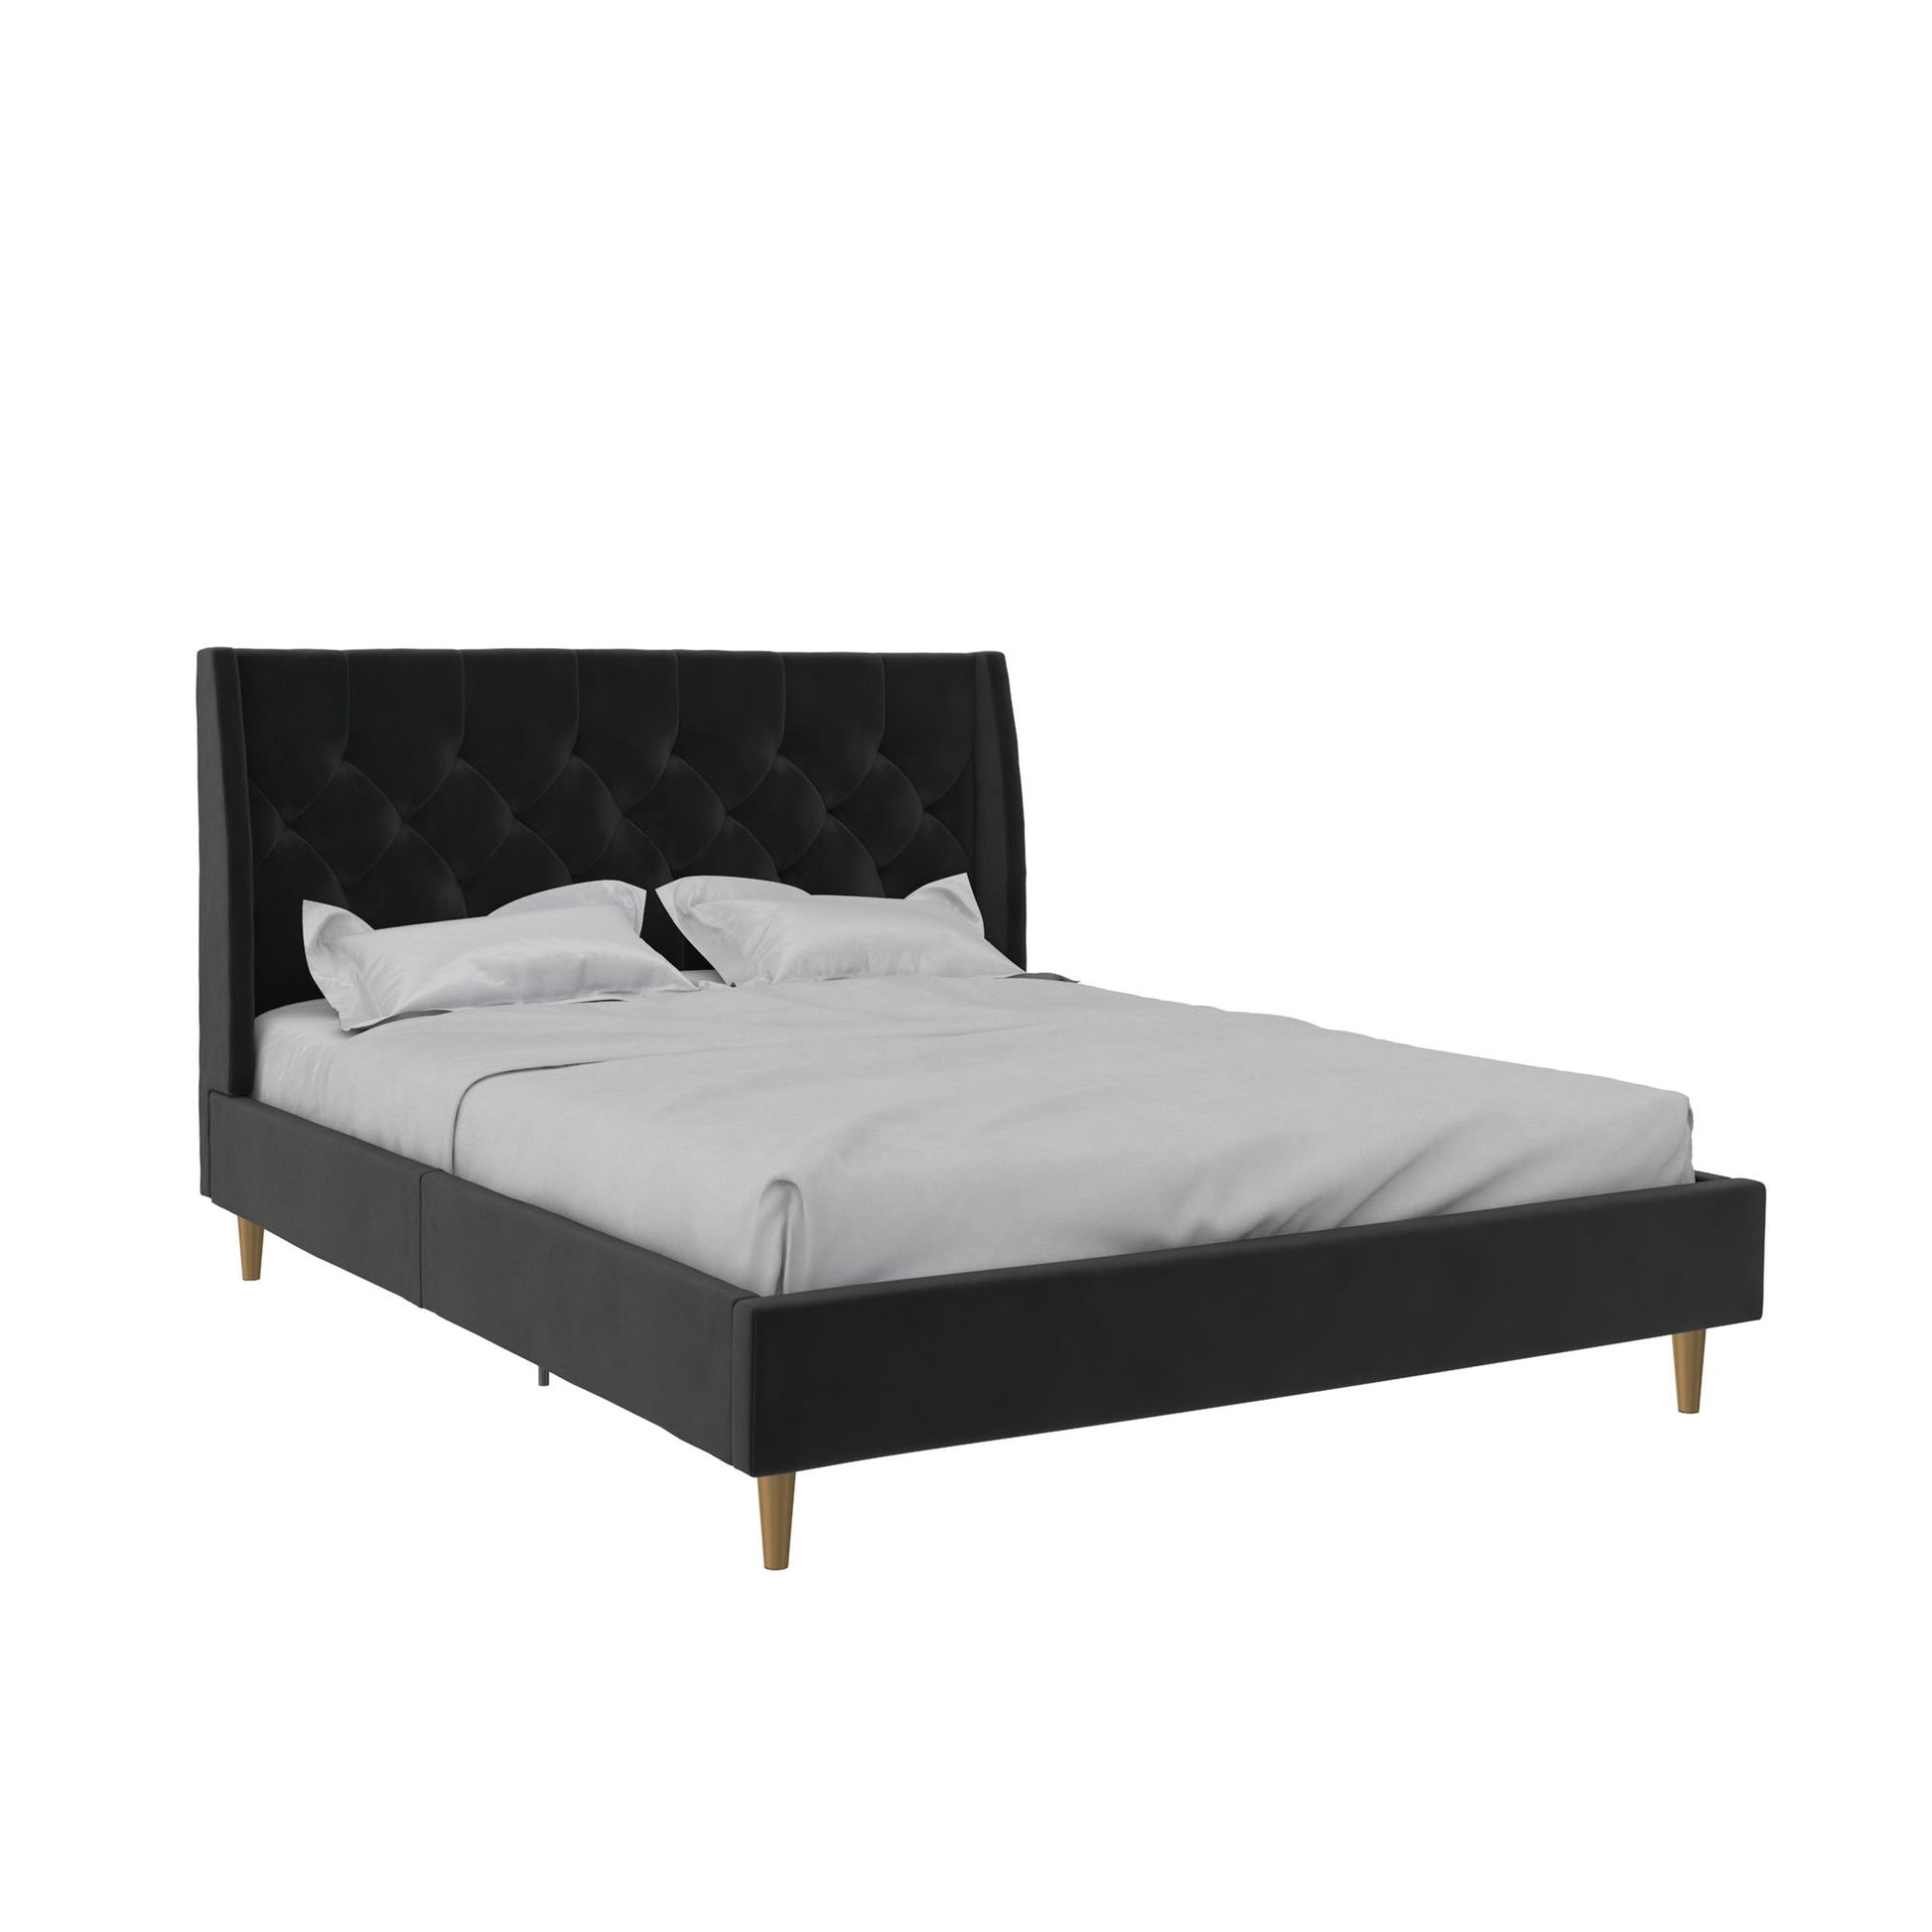 Novogratz Her Majesty Upholstered Bed, Queen, Black Velvet - Black - Queen